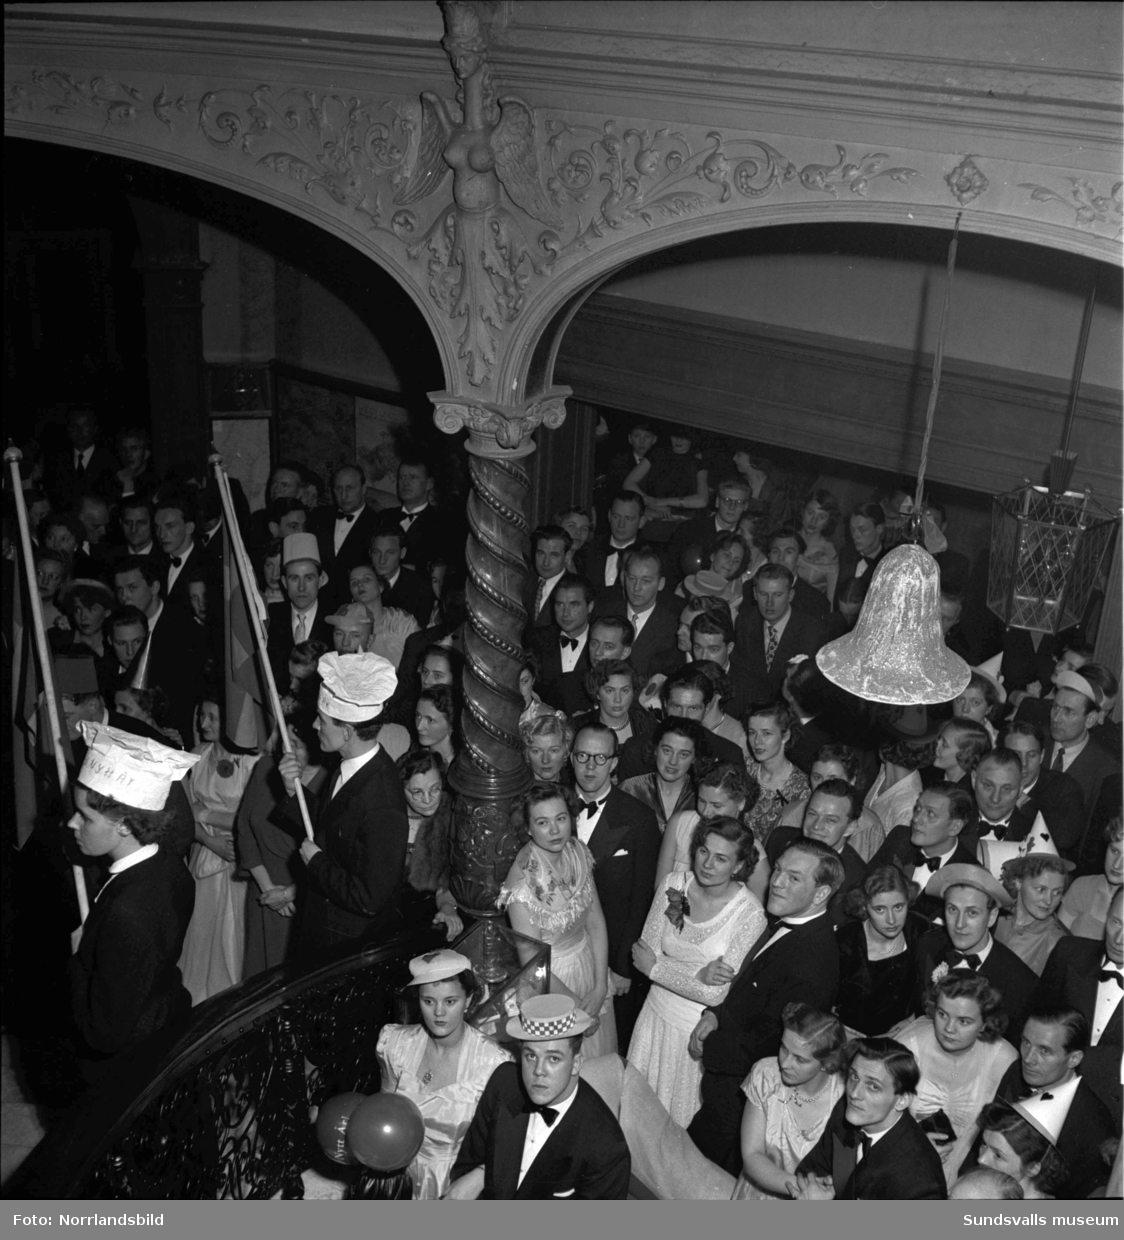 Nyårsfirande på Knaust med bland annat klockringning i den berömda trappan och en ung dragspelare som får förtroendet att förvalta nyckeln till det nya året 1951. (Eventuellt Lars-Erik Sundbom.)